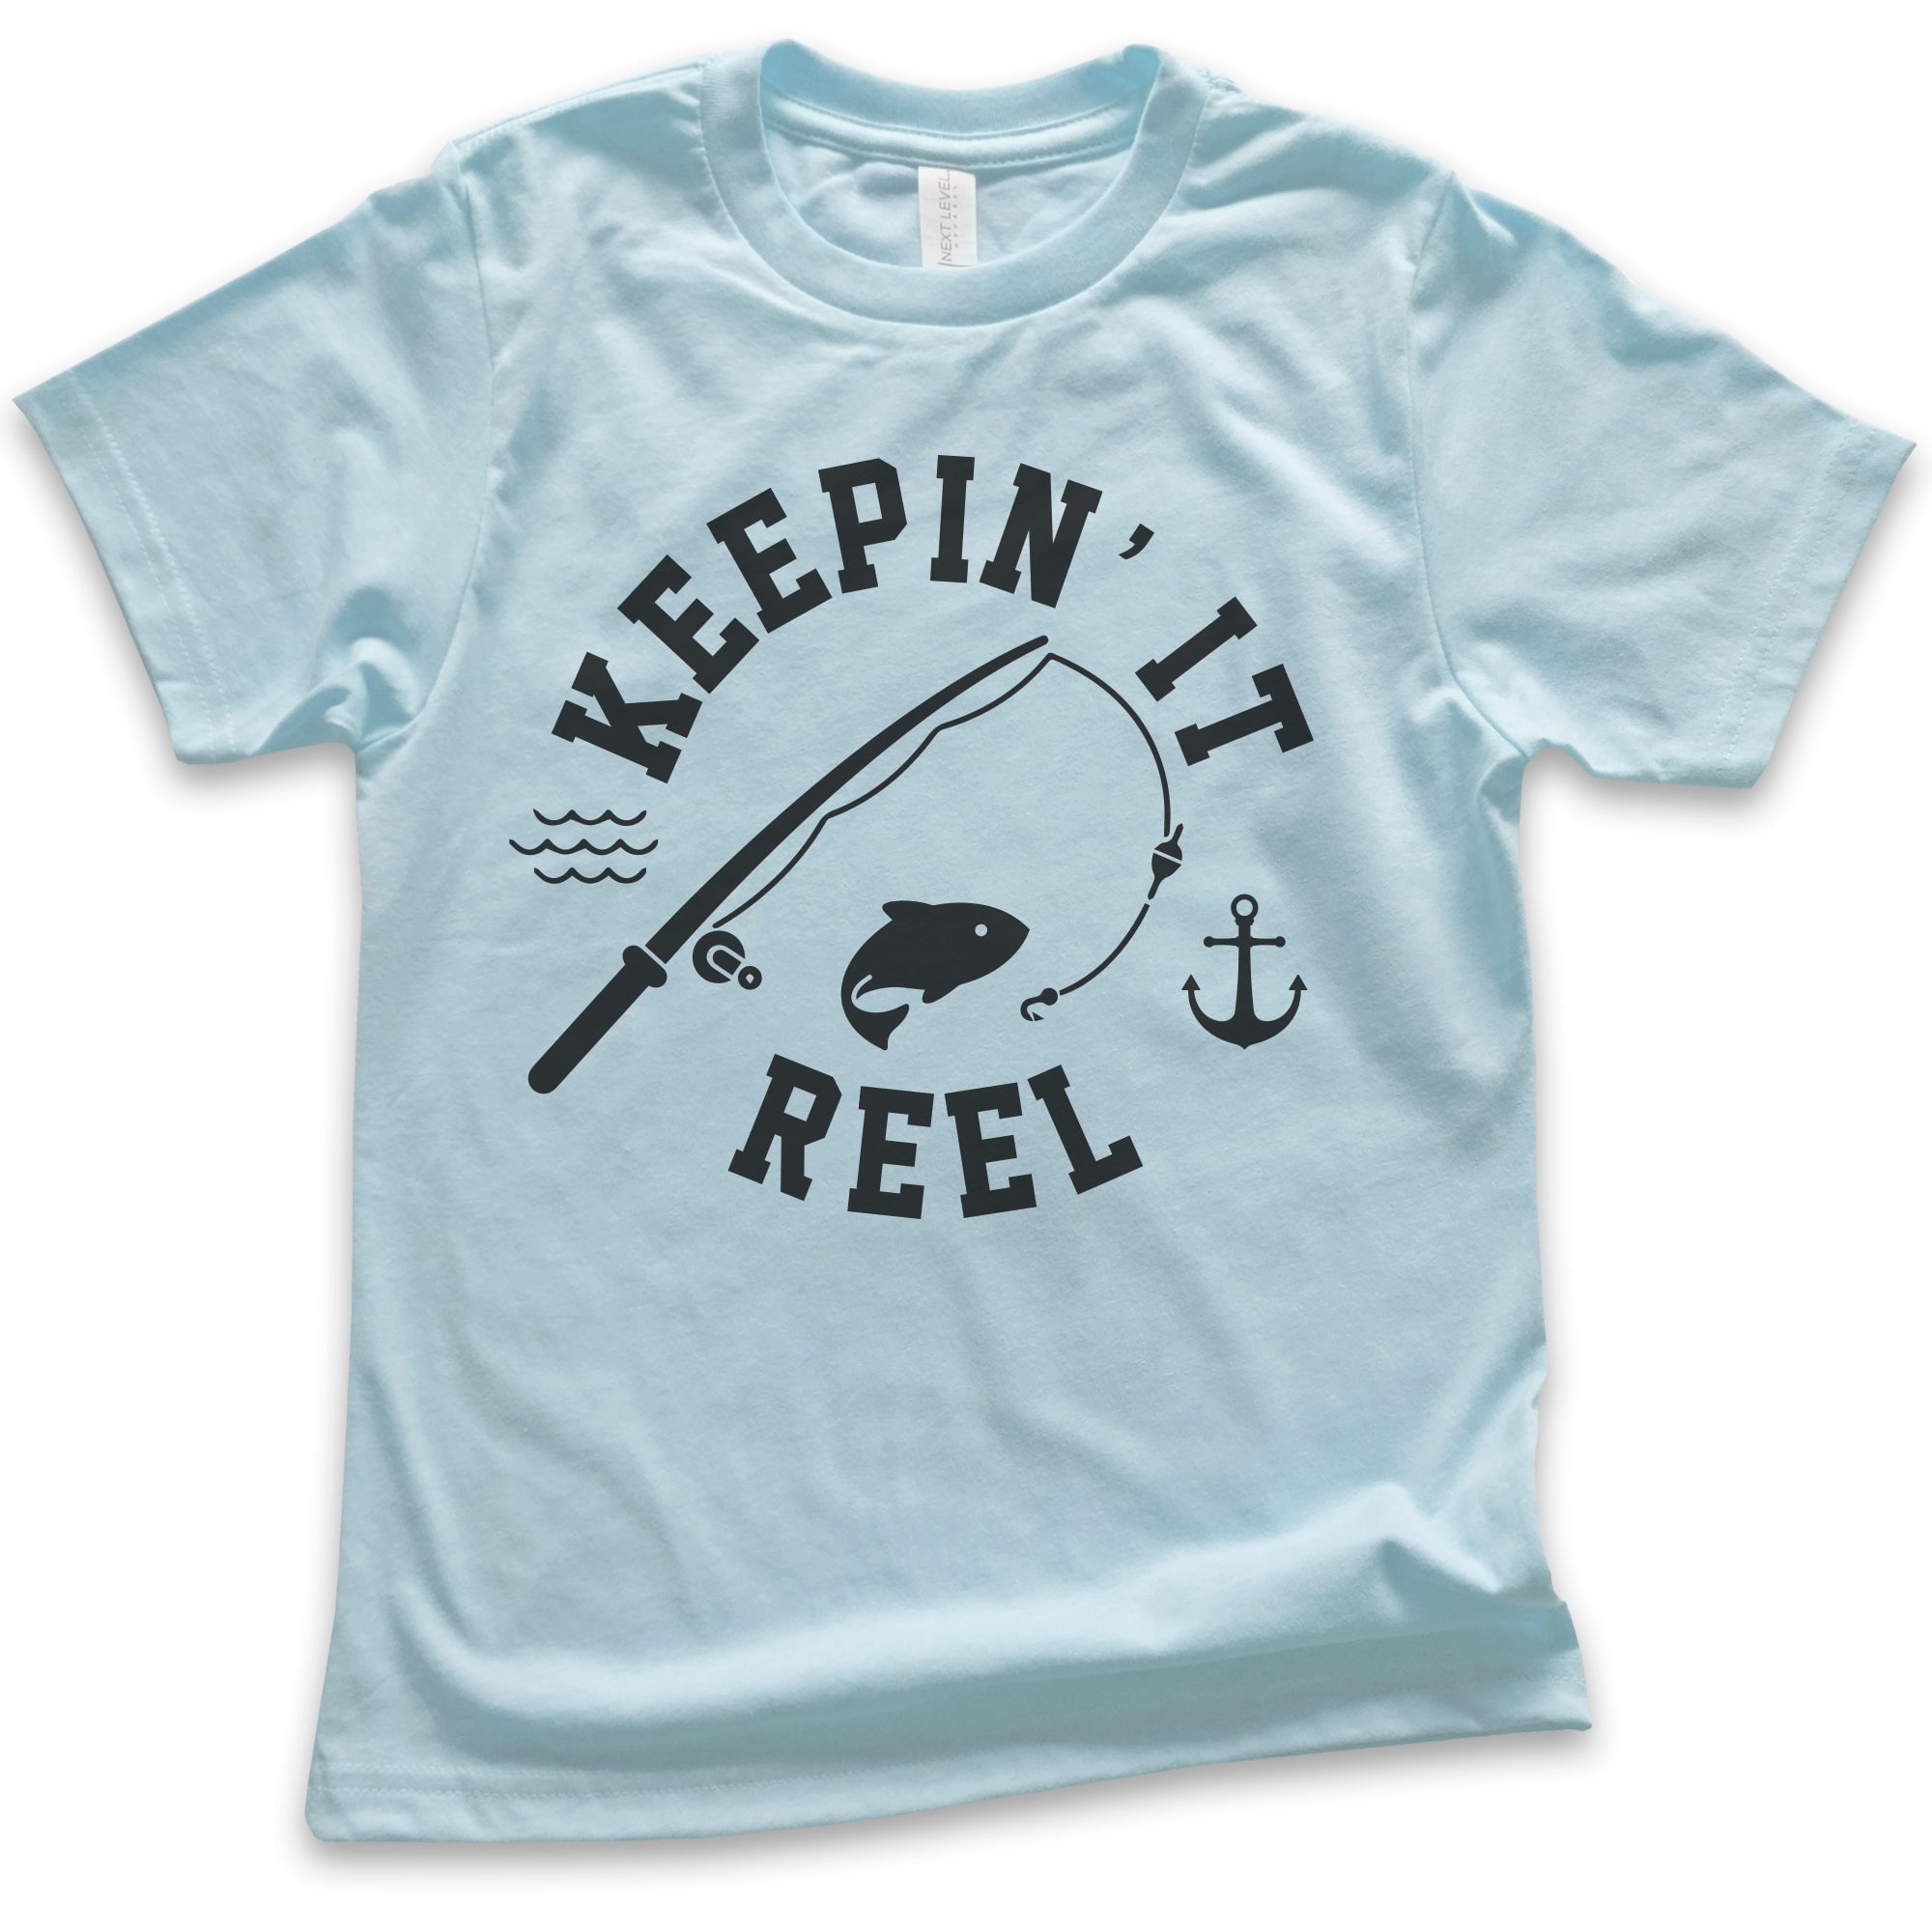 Kids Keepin' It Reel Shirt, Youth Kids Boy Girl T-Shirt, Fishing Shirt